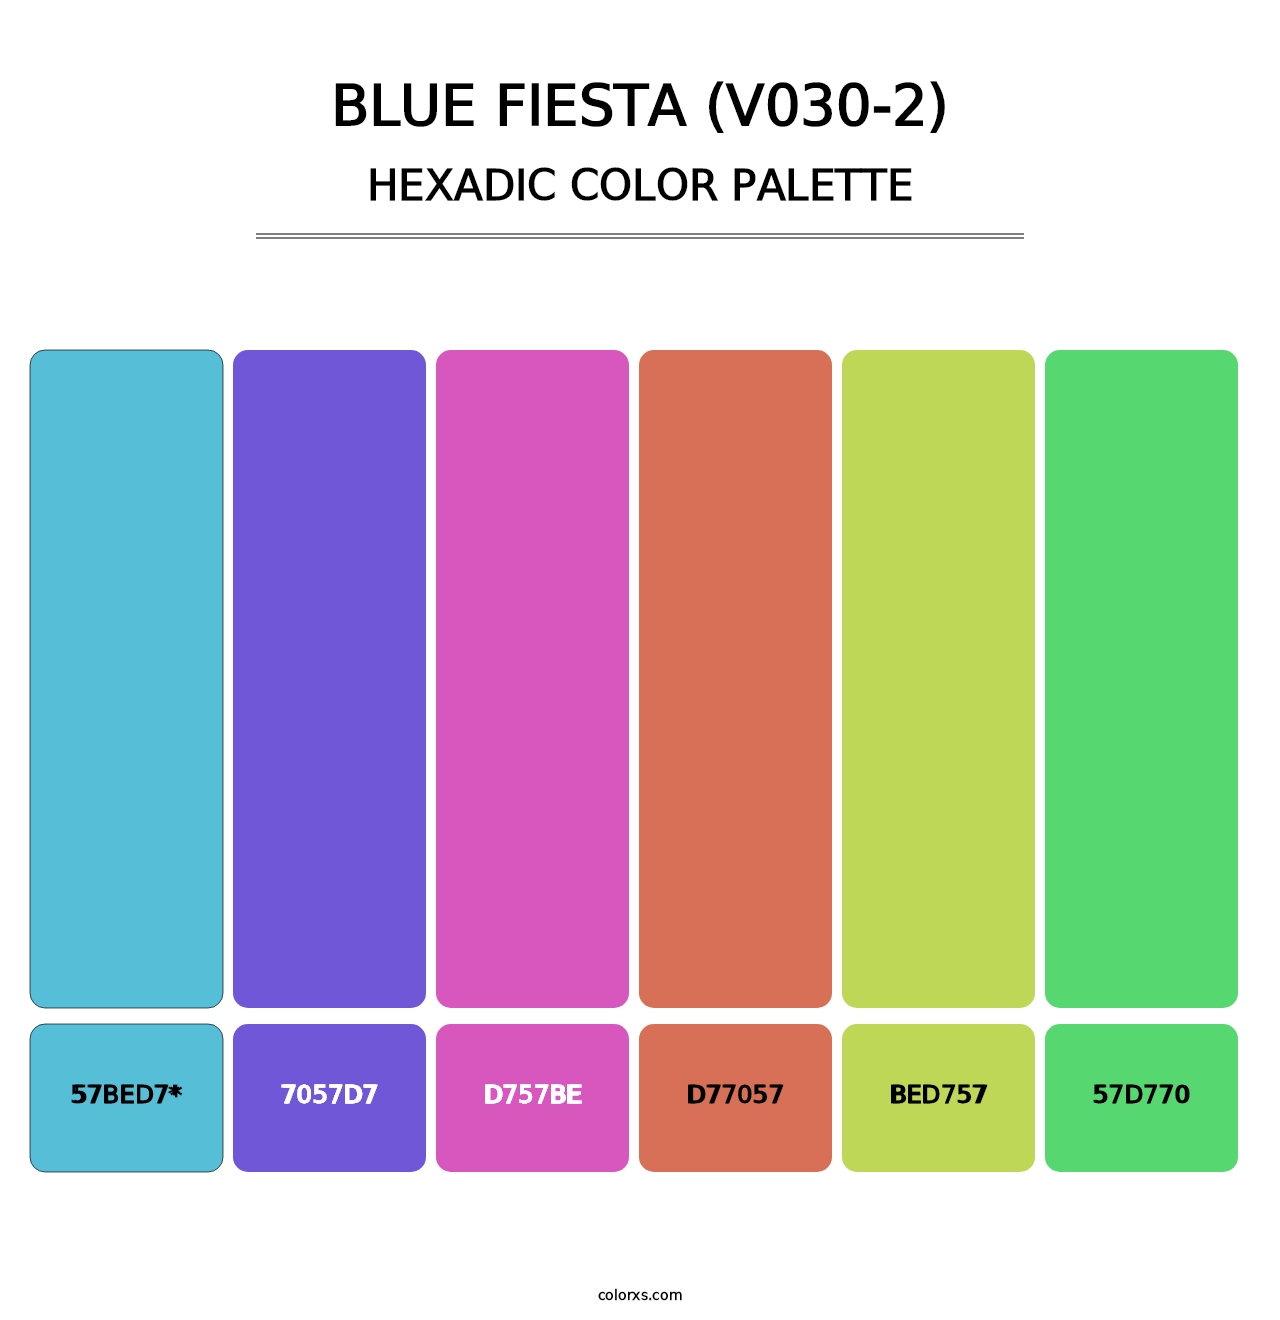 Blue Fiesta (V030-2) - Hexadic Color Palette